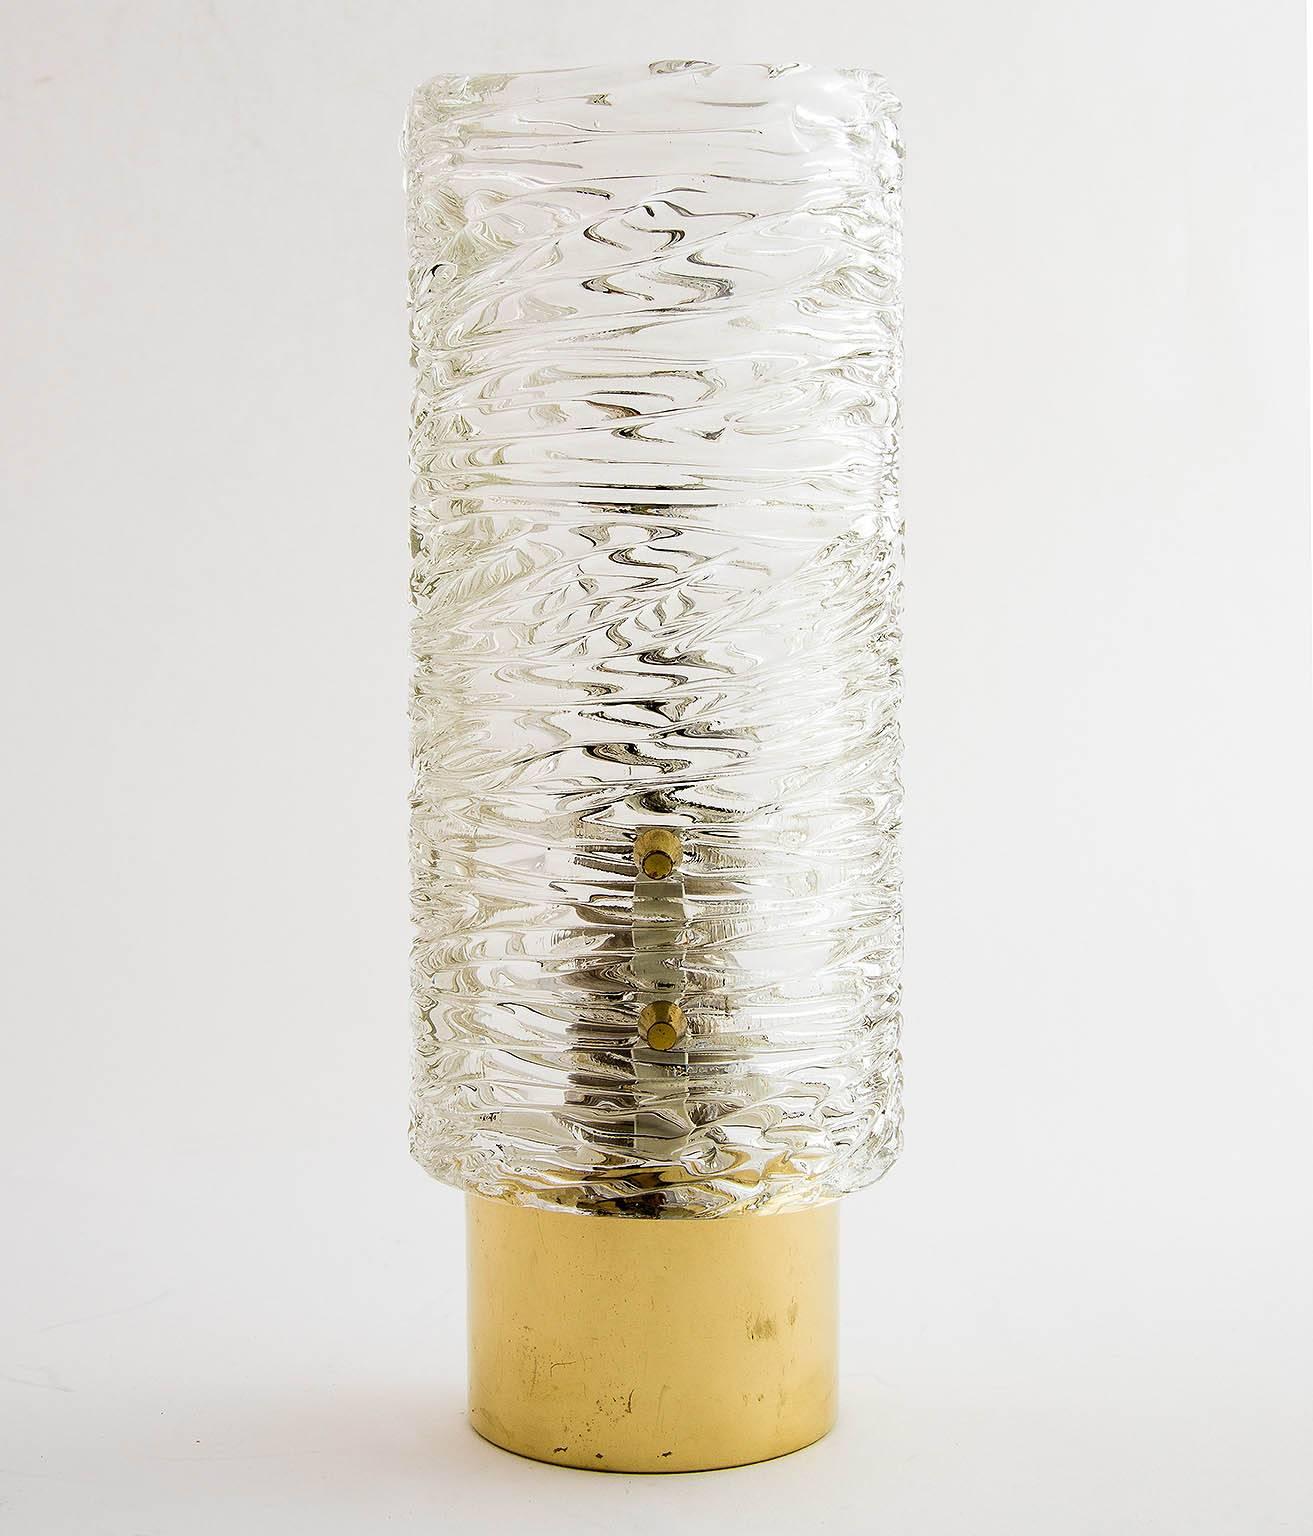 Eine von sechs Wandleuchten aus Messing und strukturiertem Glas von J.T. Kalmar, Österreich, hergestellt um die Jahrhundertmitte, ca. 1950.
Die Leuchten sind in sehr gutem Zustand. Sie werden neu verkabelt und poliert, so dass das Messing allmählich